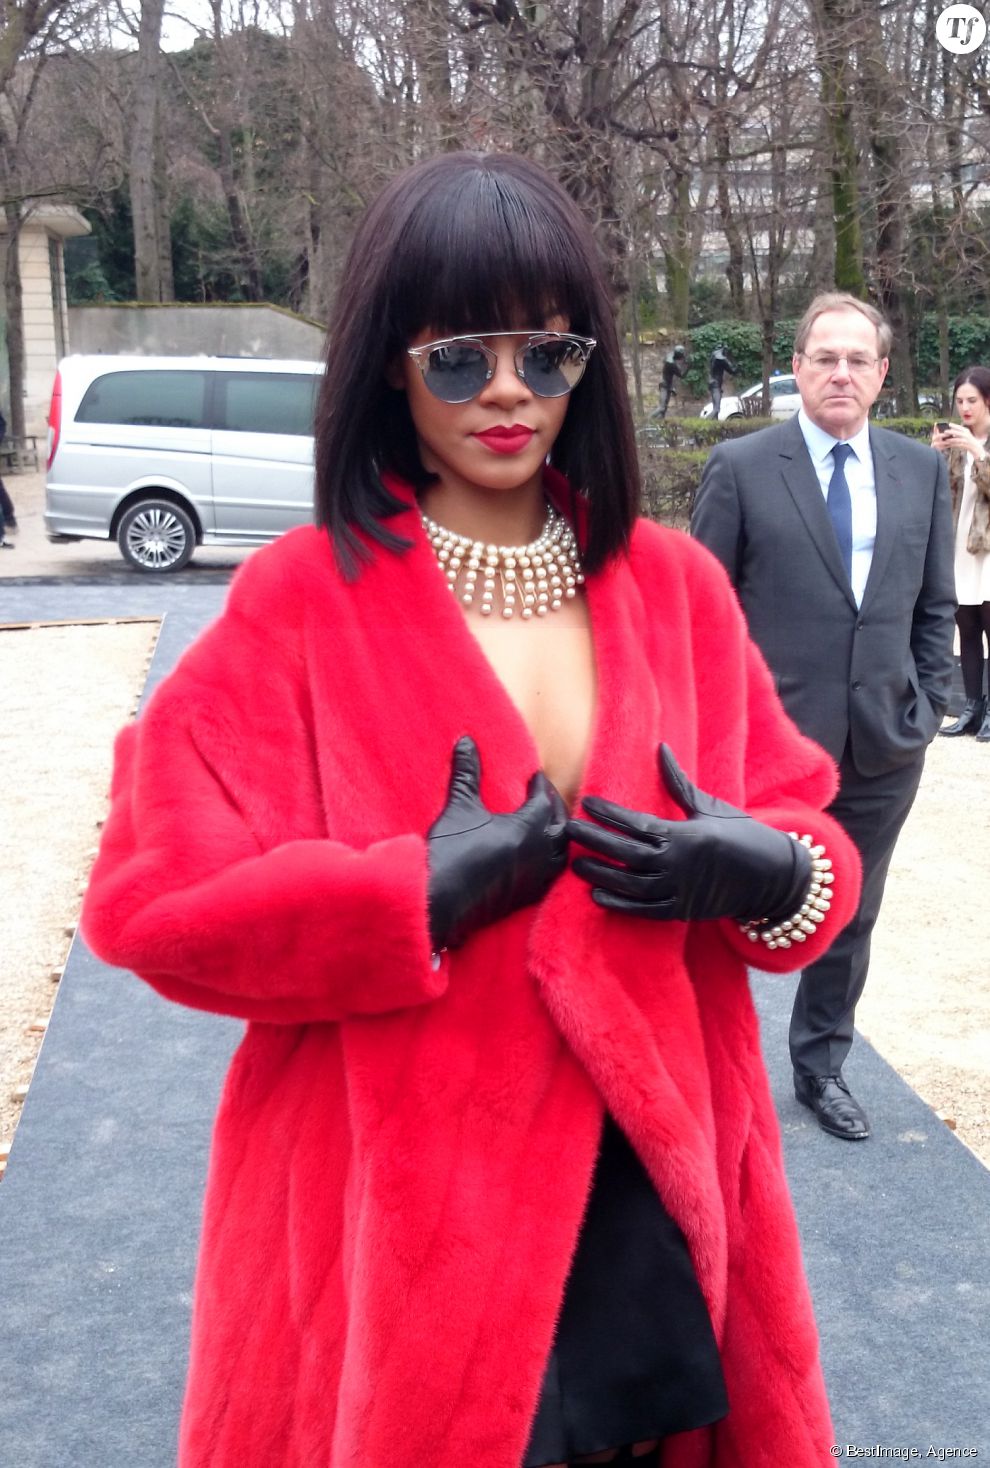  Février 2014 : Pour le défilé Dior, Rihanna avait opté pour une fourrure rouge. Ce n&#039;est pas tant la tenue qui est provoc que... son odeur ! D&#039;après un tweet du célèbre journaliste Loic Prigent, quelqu&#039;un dans l&#039;assistance aurait déclaré : &quot;J&#039;étais à côté de Rihanna chez Dior, sa fourrure était imprégnée de l&#039;odeur de weed. J&#039;étais high à la fin du défilé.&quot; 